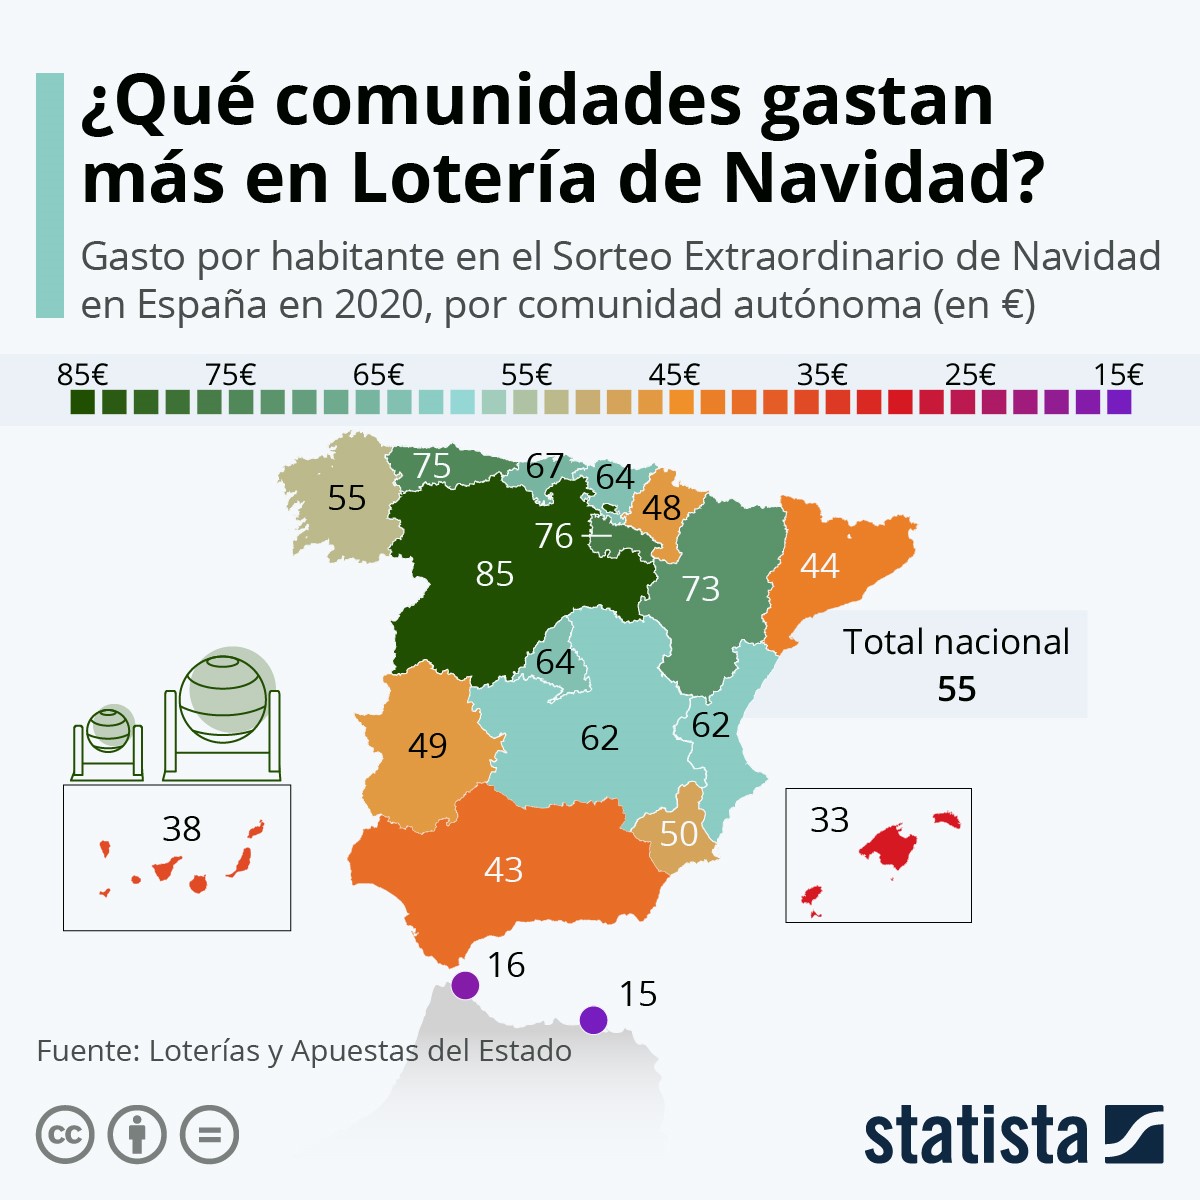 Gasto en de Lotería de Navidad en España (2020)